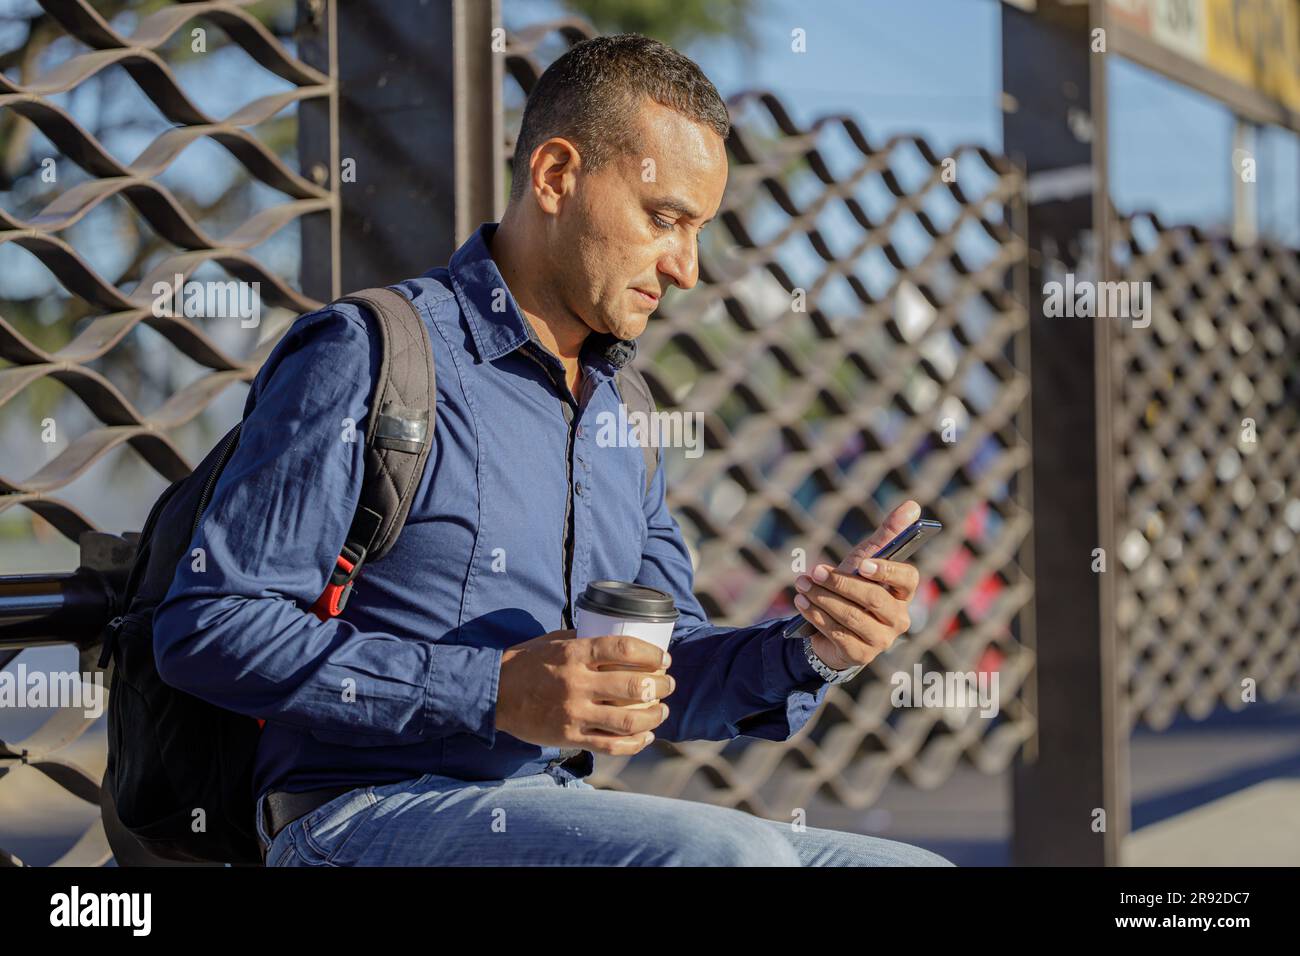 Ein junger lateiner, der auf sein Handy schaute und mit einer Papptasse Kaffee in der Hand auf den Bus wartete. Stockfoto